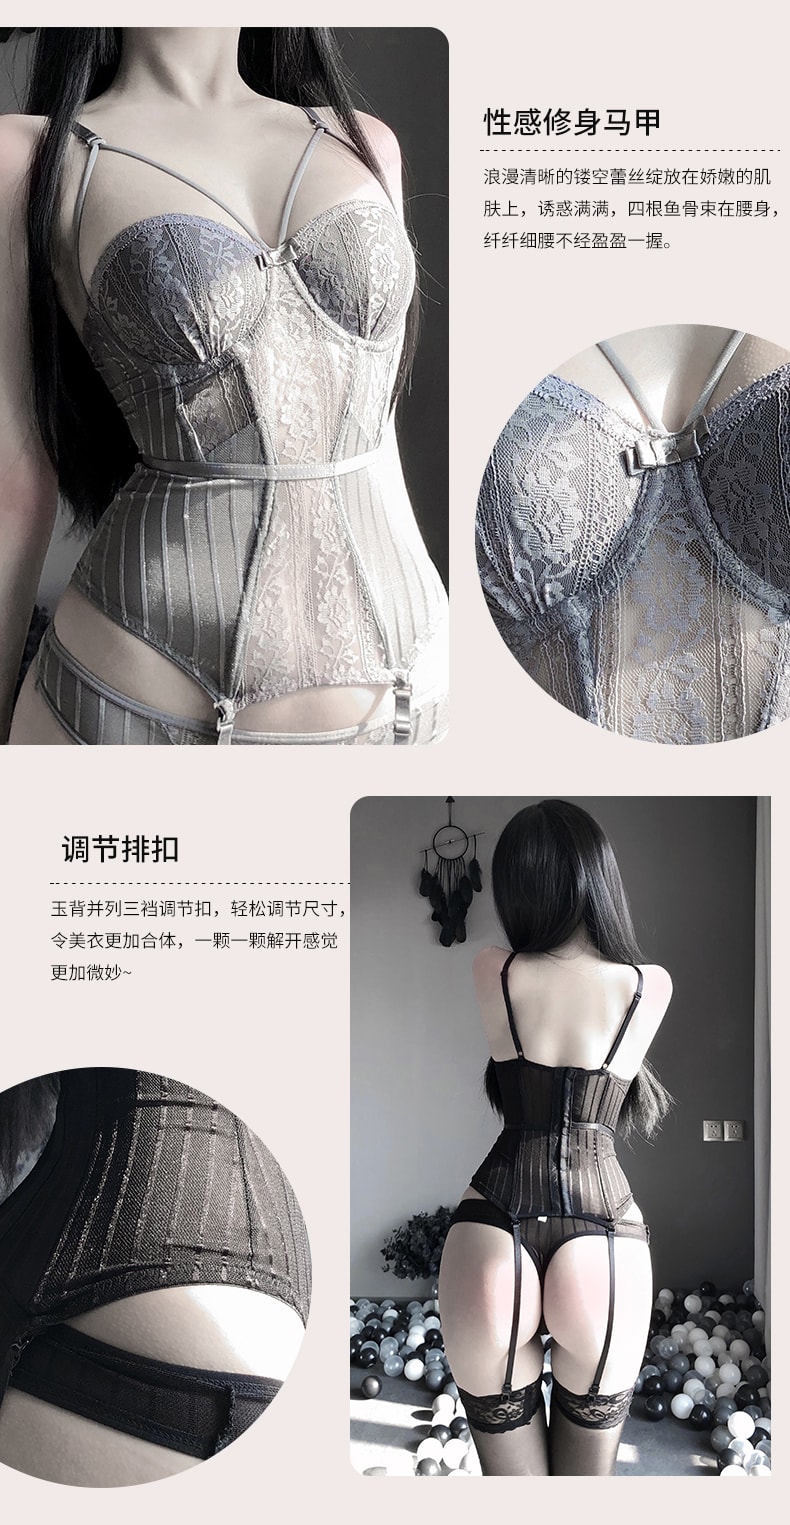 中国直邮 林林婷 性感马甲连体衣束身套装 展现女性美丽 灰色 均码一套